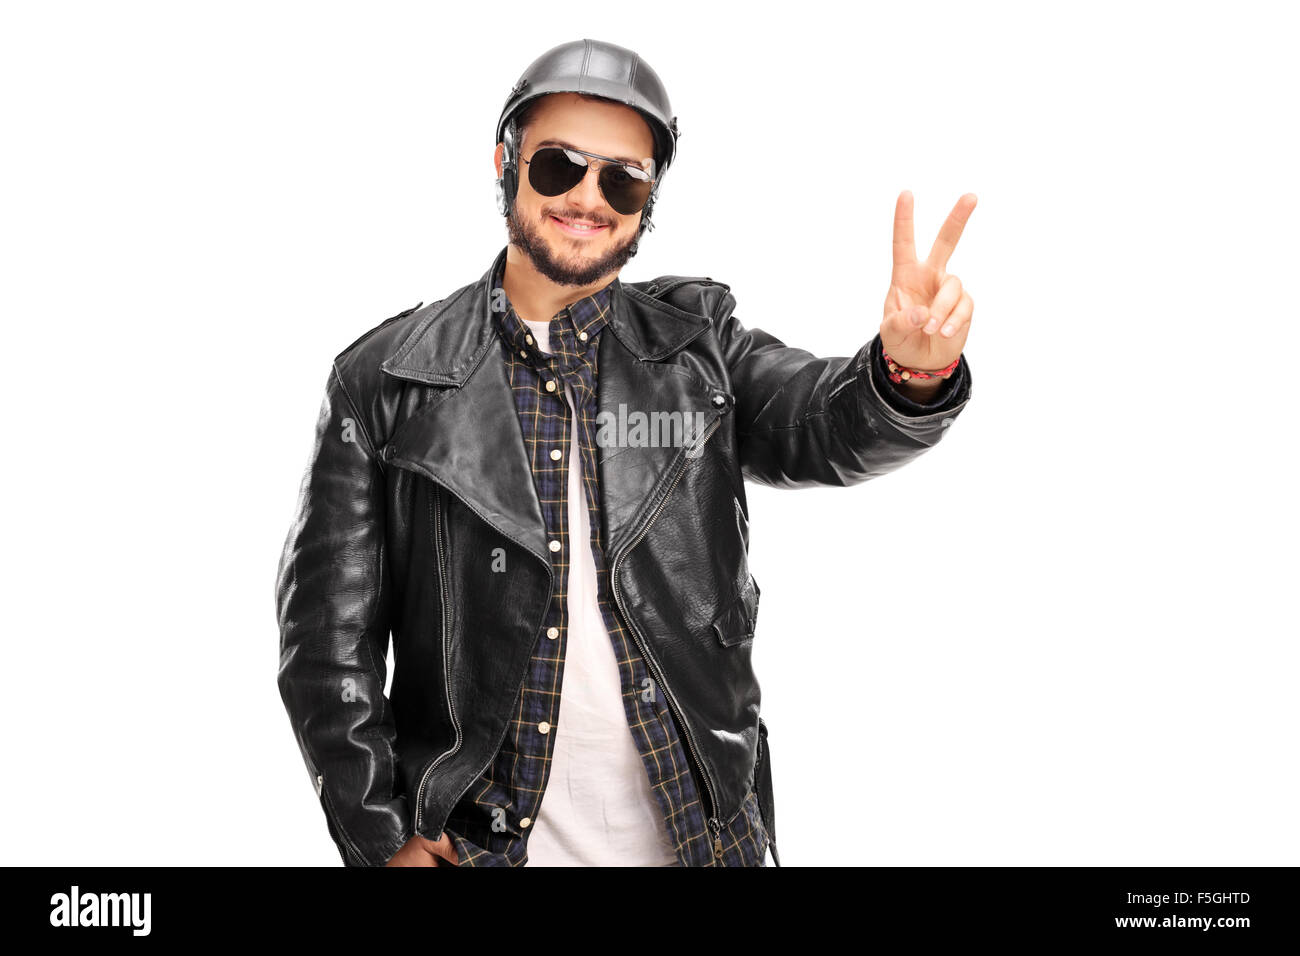 Junge fröhlich Biker in eine schwarze Lederjacke, eine Frieden Hand Geste isoliert auf weißem Hintergrund Stockfoto